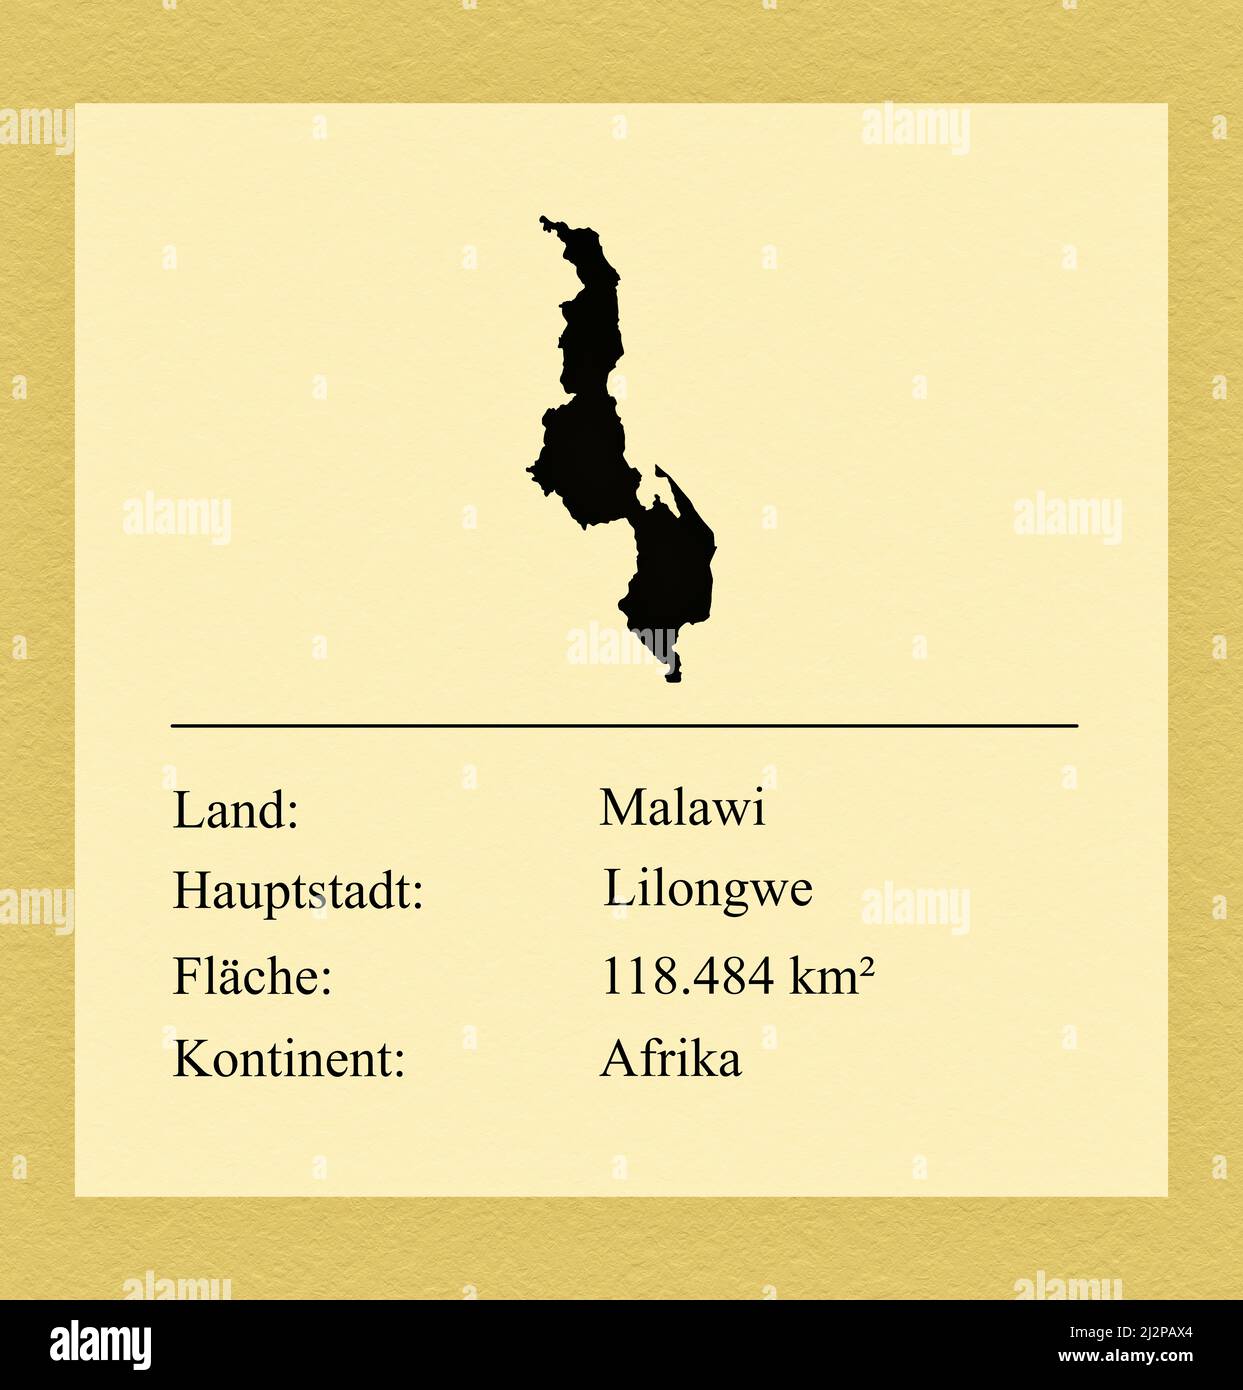 Umrisse des Landes Malawi, darunter ein kleiner Steckbrief mit Ländernamen, Hauptstadt, Fläche und Kontinent Foto Stock